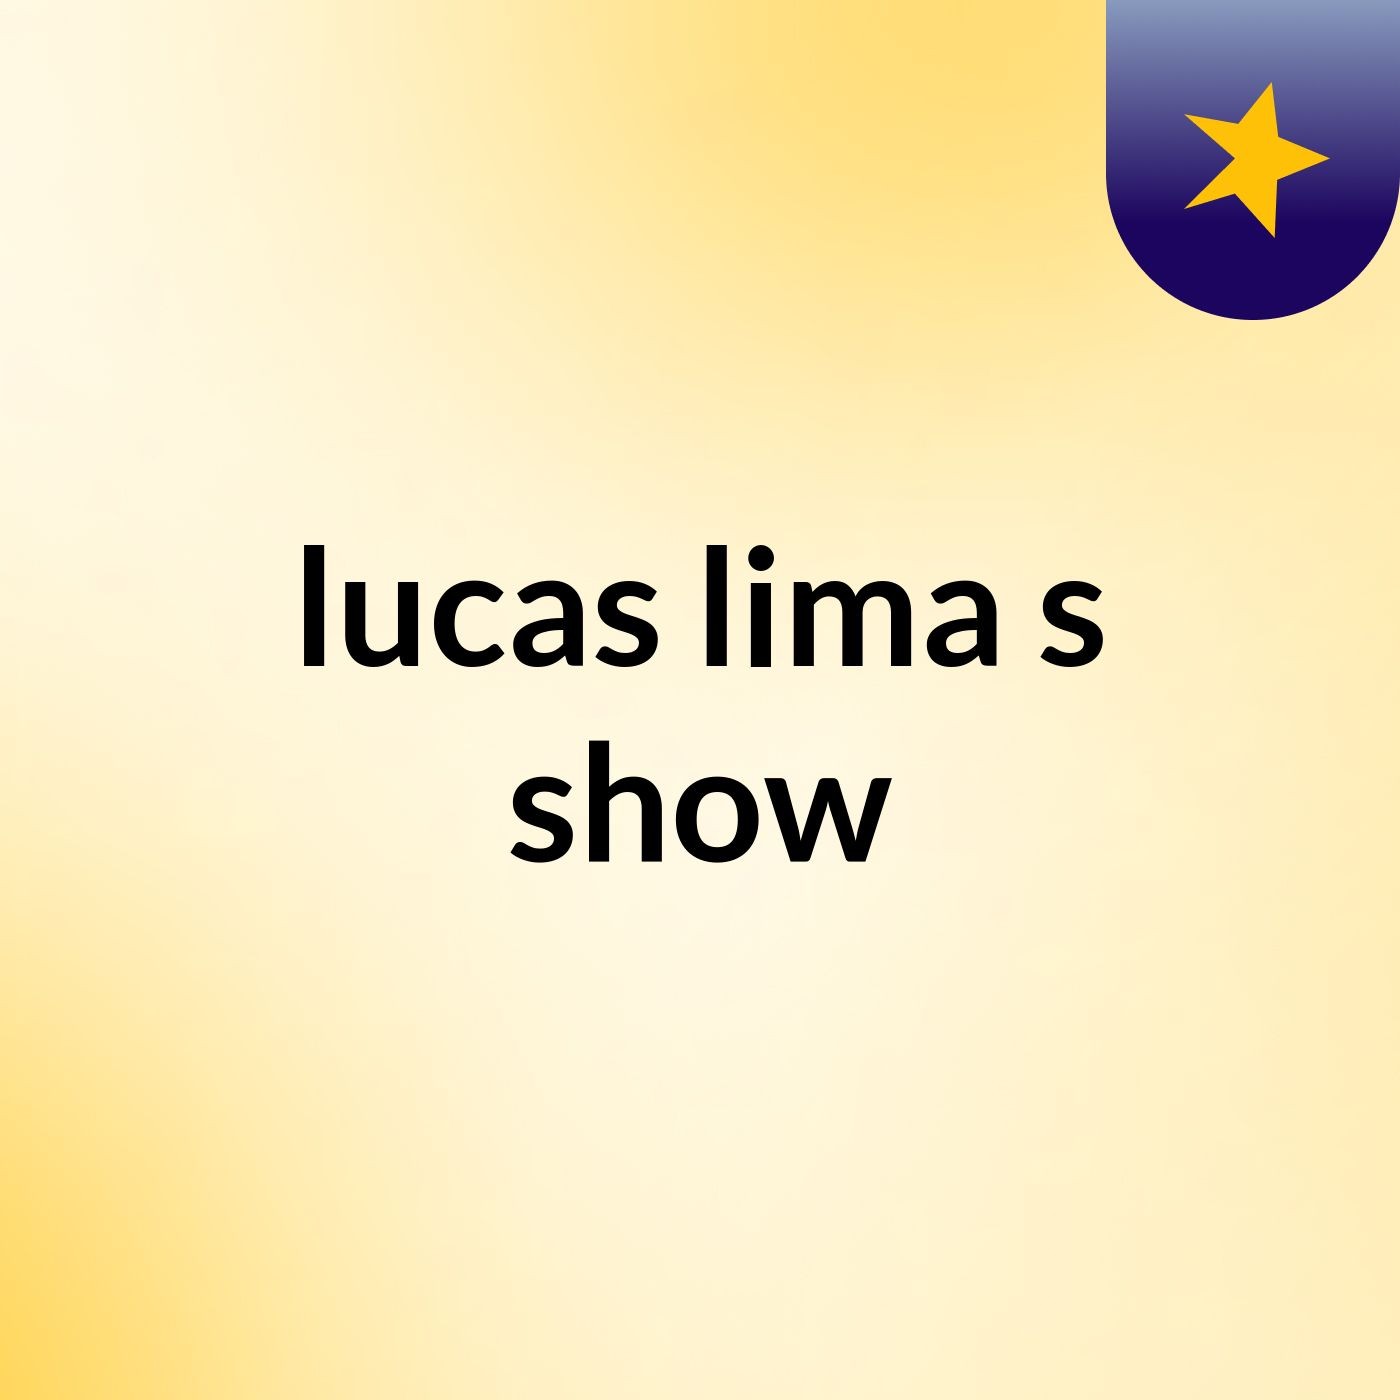 lucas lima's show